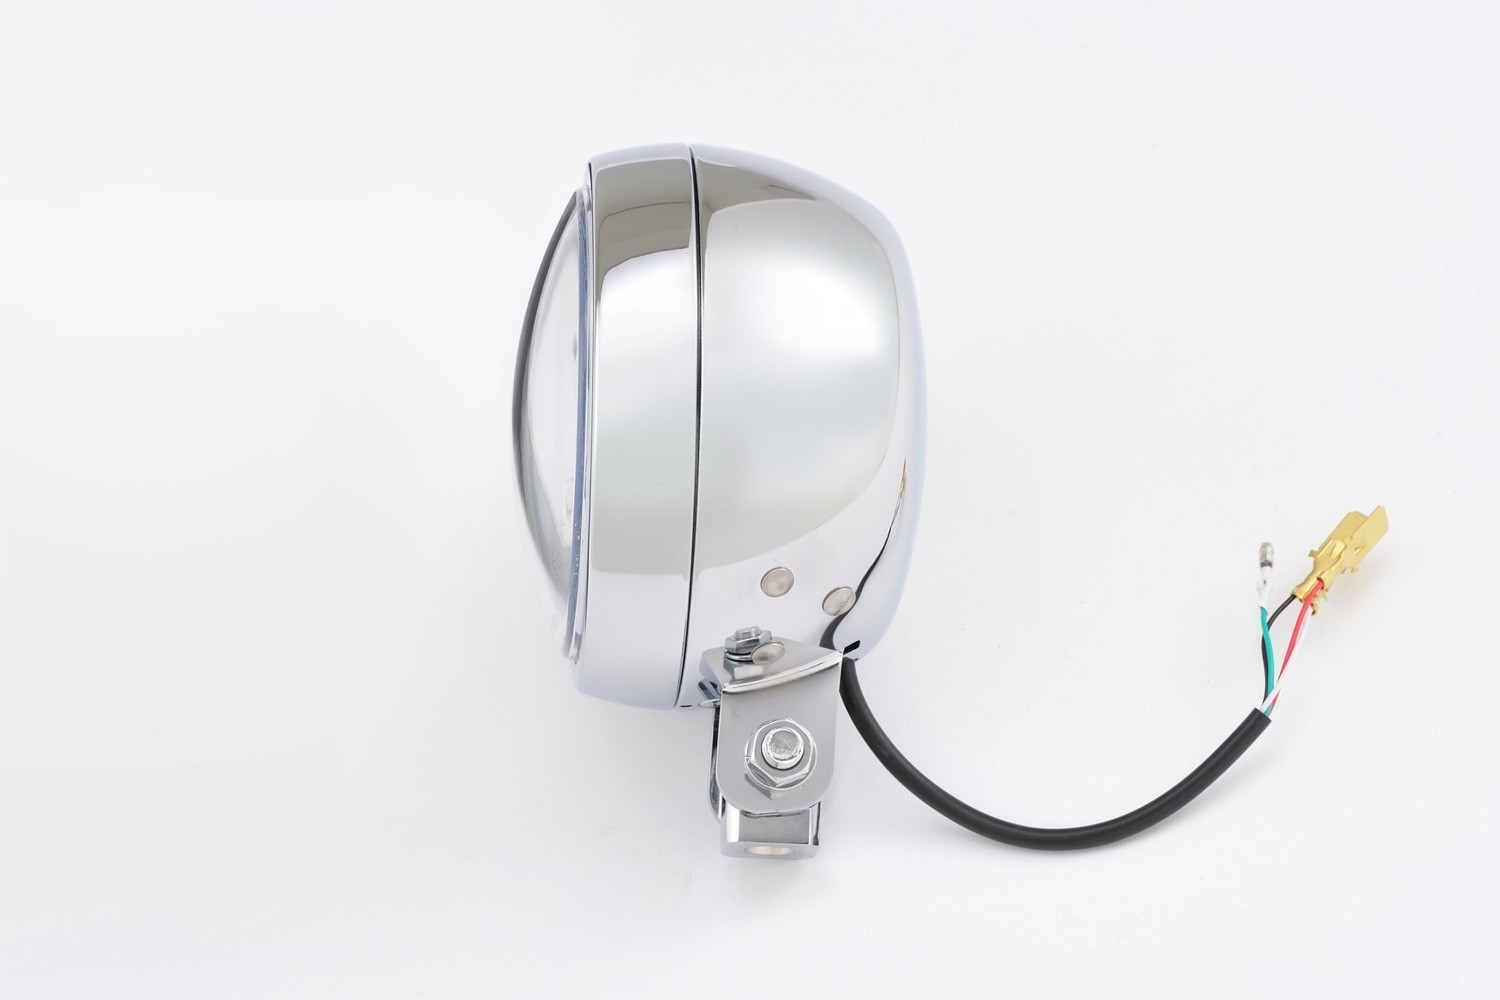 88635 DAYTONA Capsule120 Hauptscheinwerfer LED, 12V, mit Abblendlicht, mit  Fernlicht, mit Begrenzungslicht x 135 mm, rund